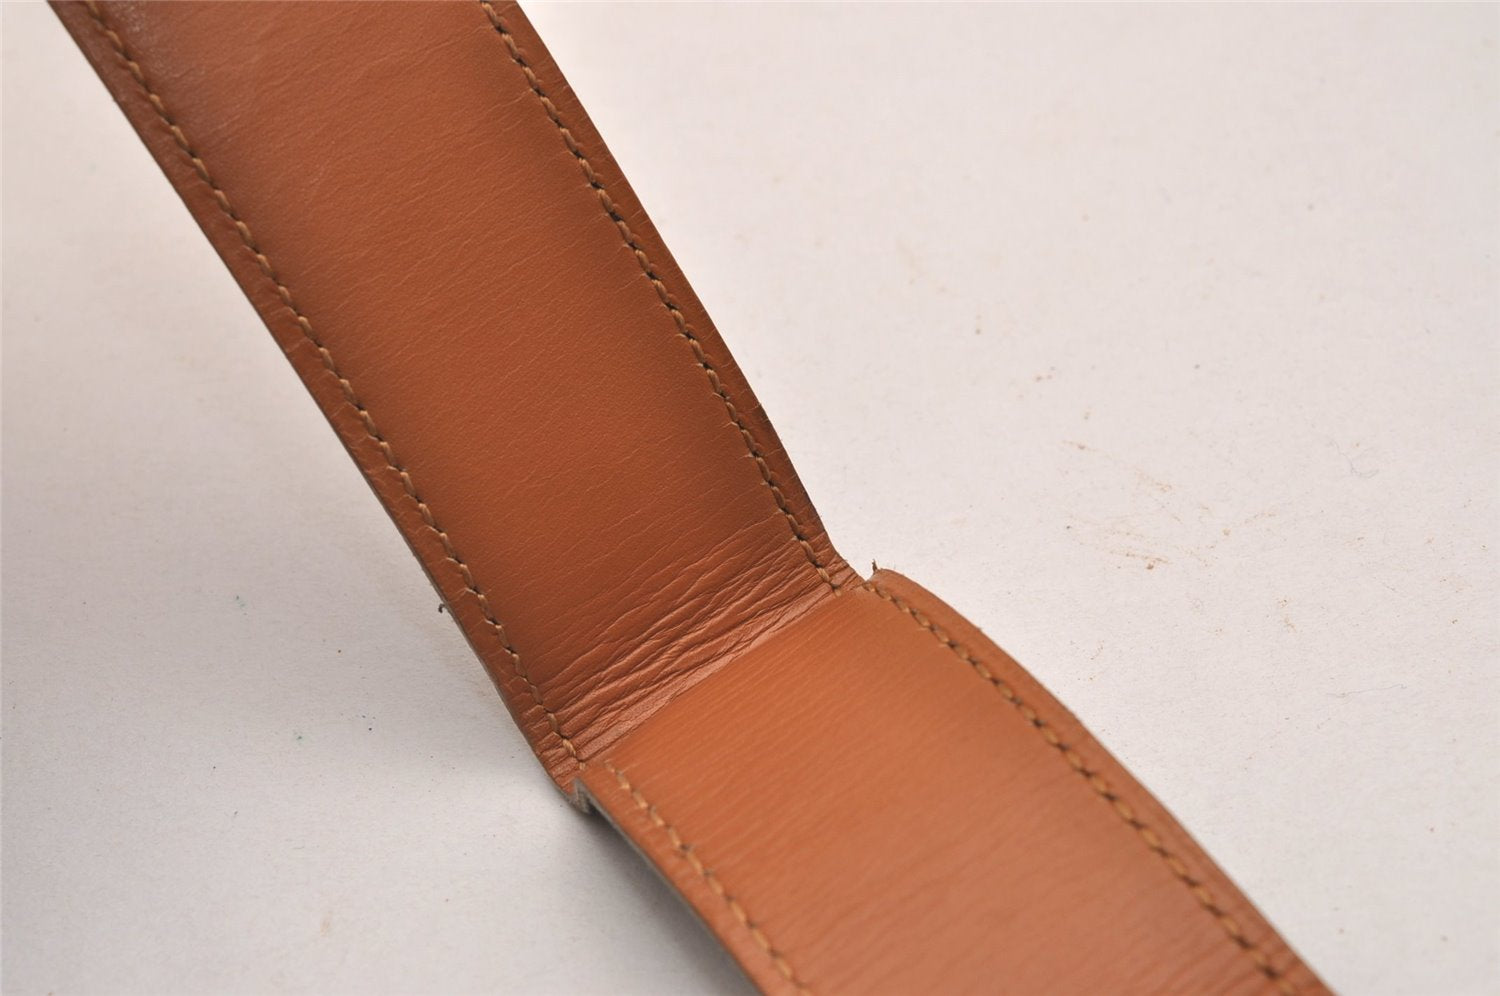 Authentic HERMES Constance Leather Belt Size 70cm 27.6